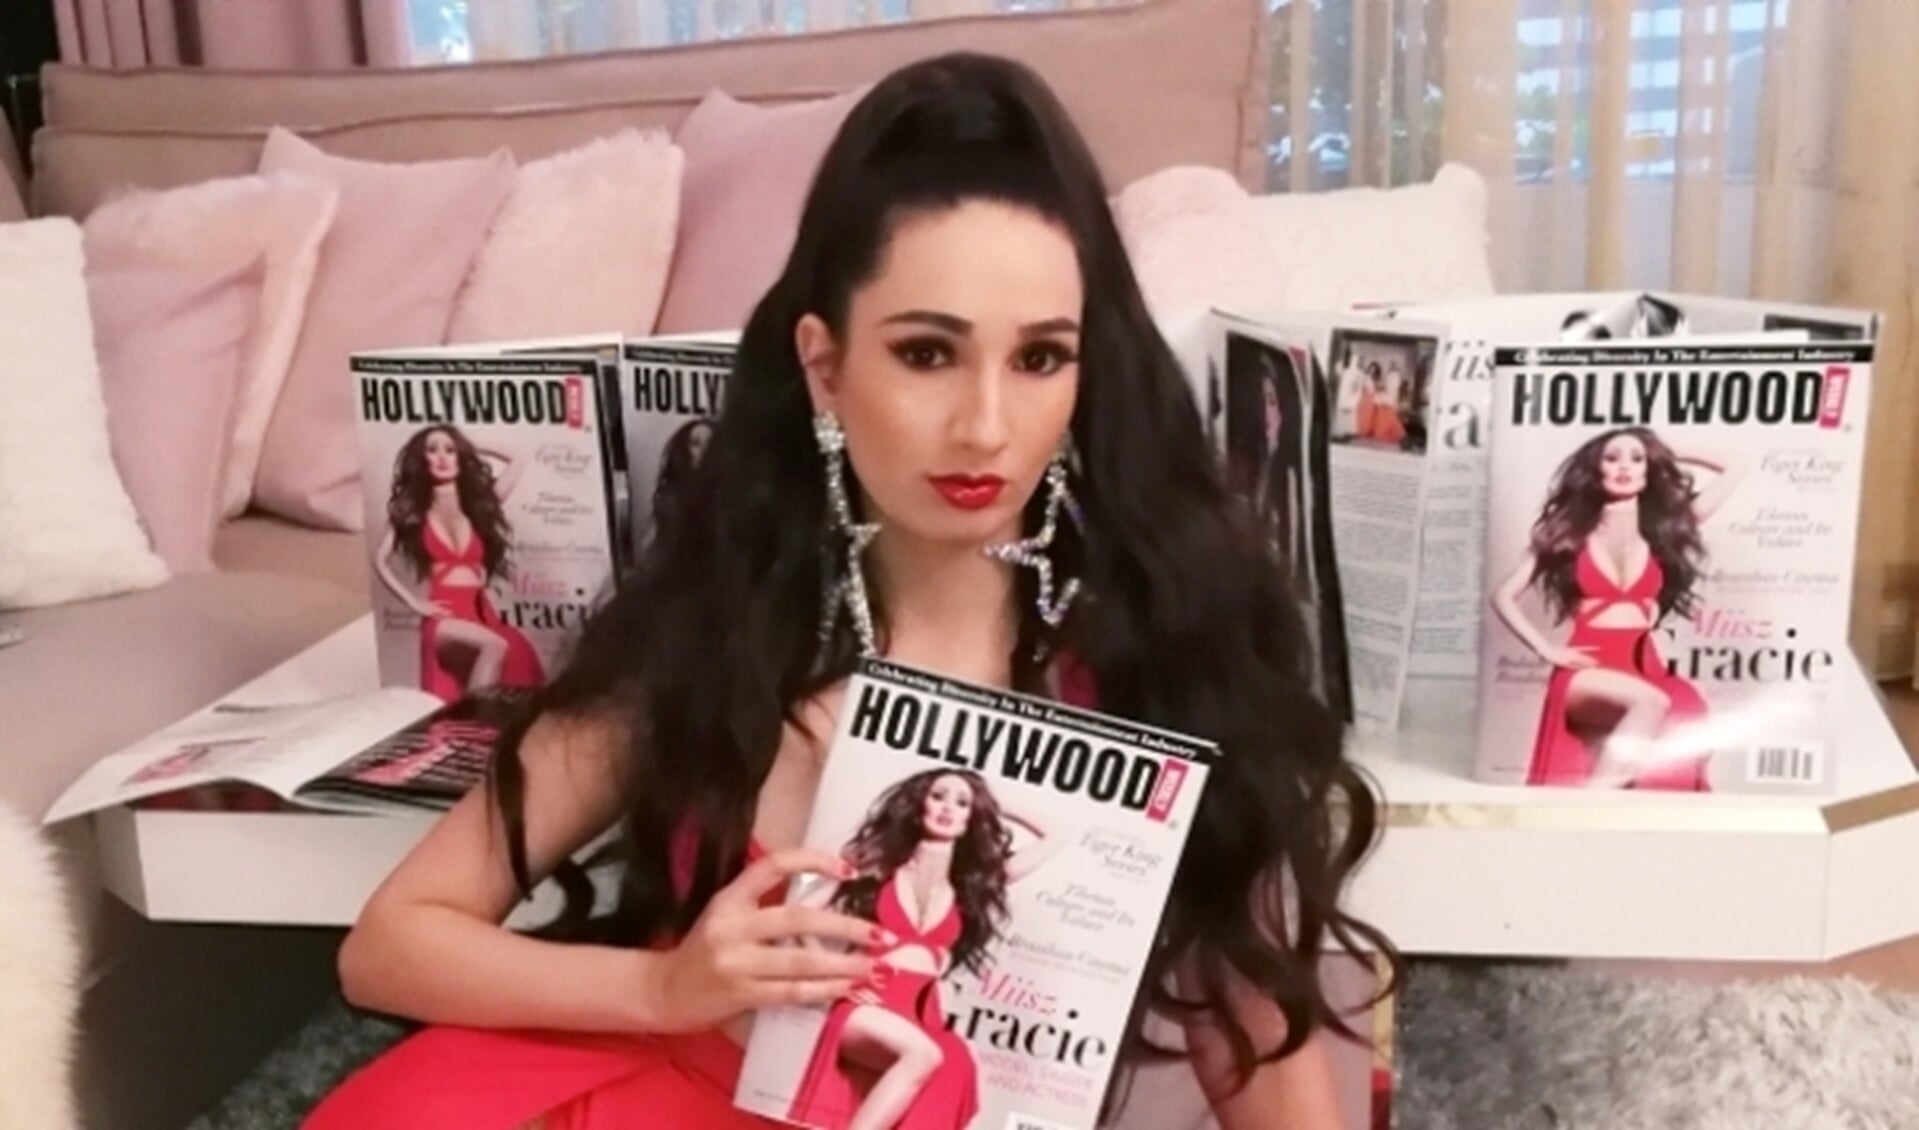 Miisz Gracie presenteert de Hollywood weekly magazine cover waarvan zij de covergirl is geworden